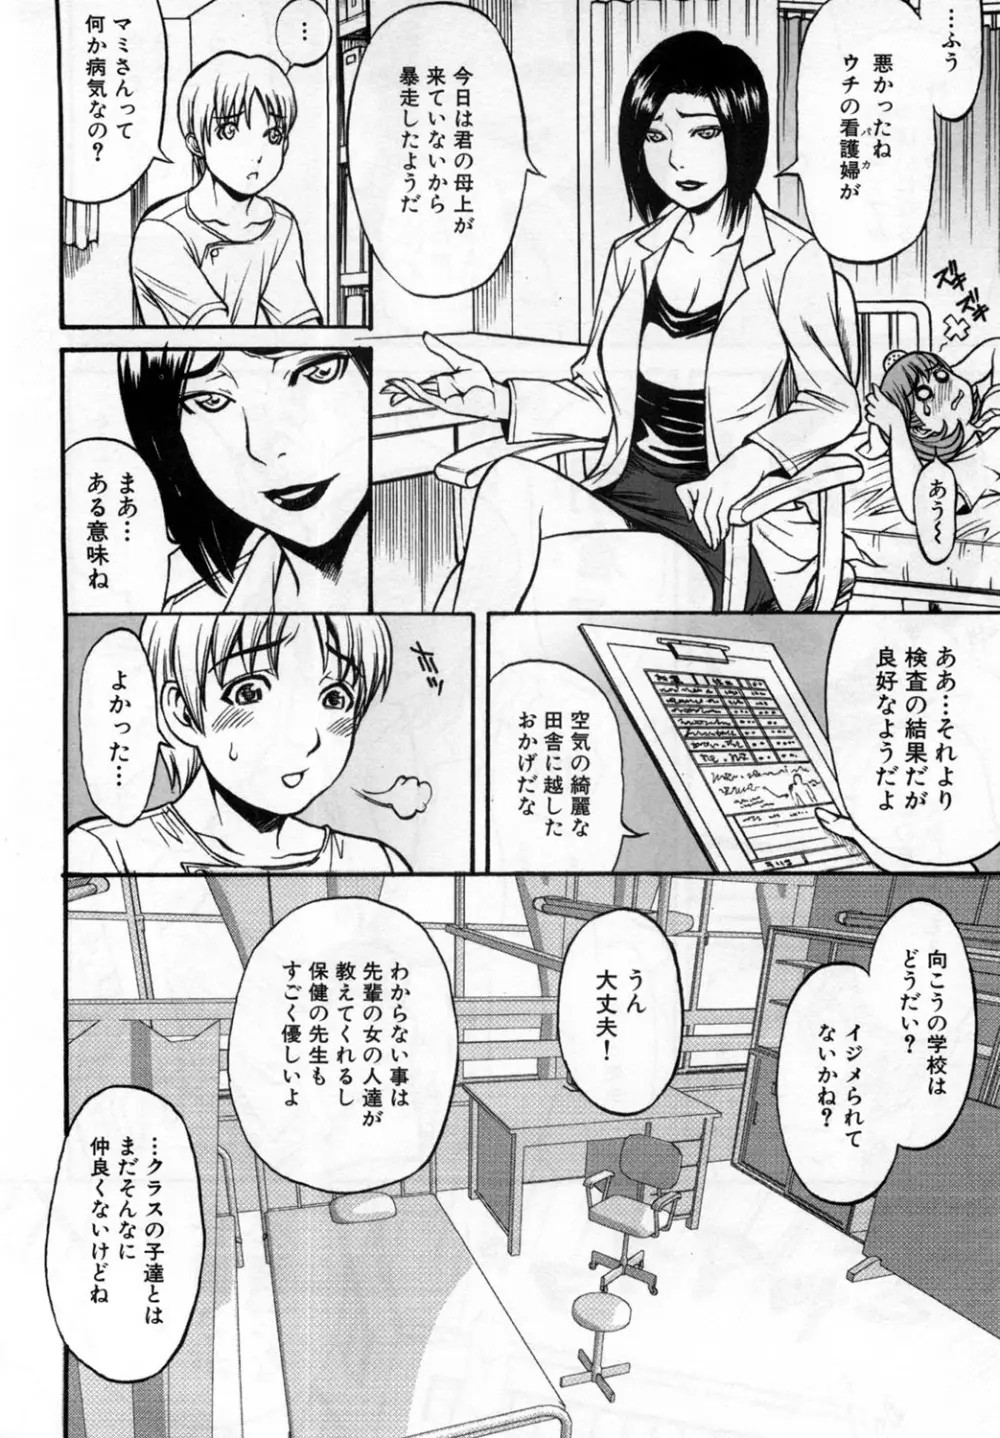 [Kuniaki Kitakata] Boku no Mama (My Mom) Chapters 1-4 Page.48